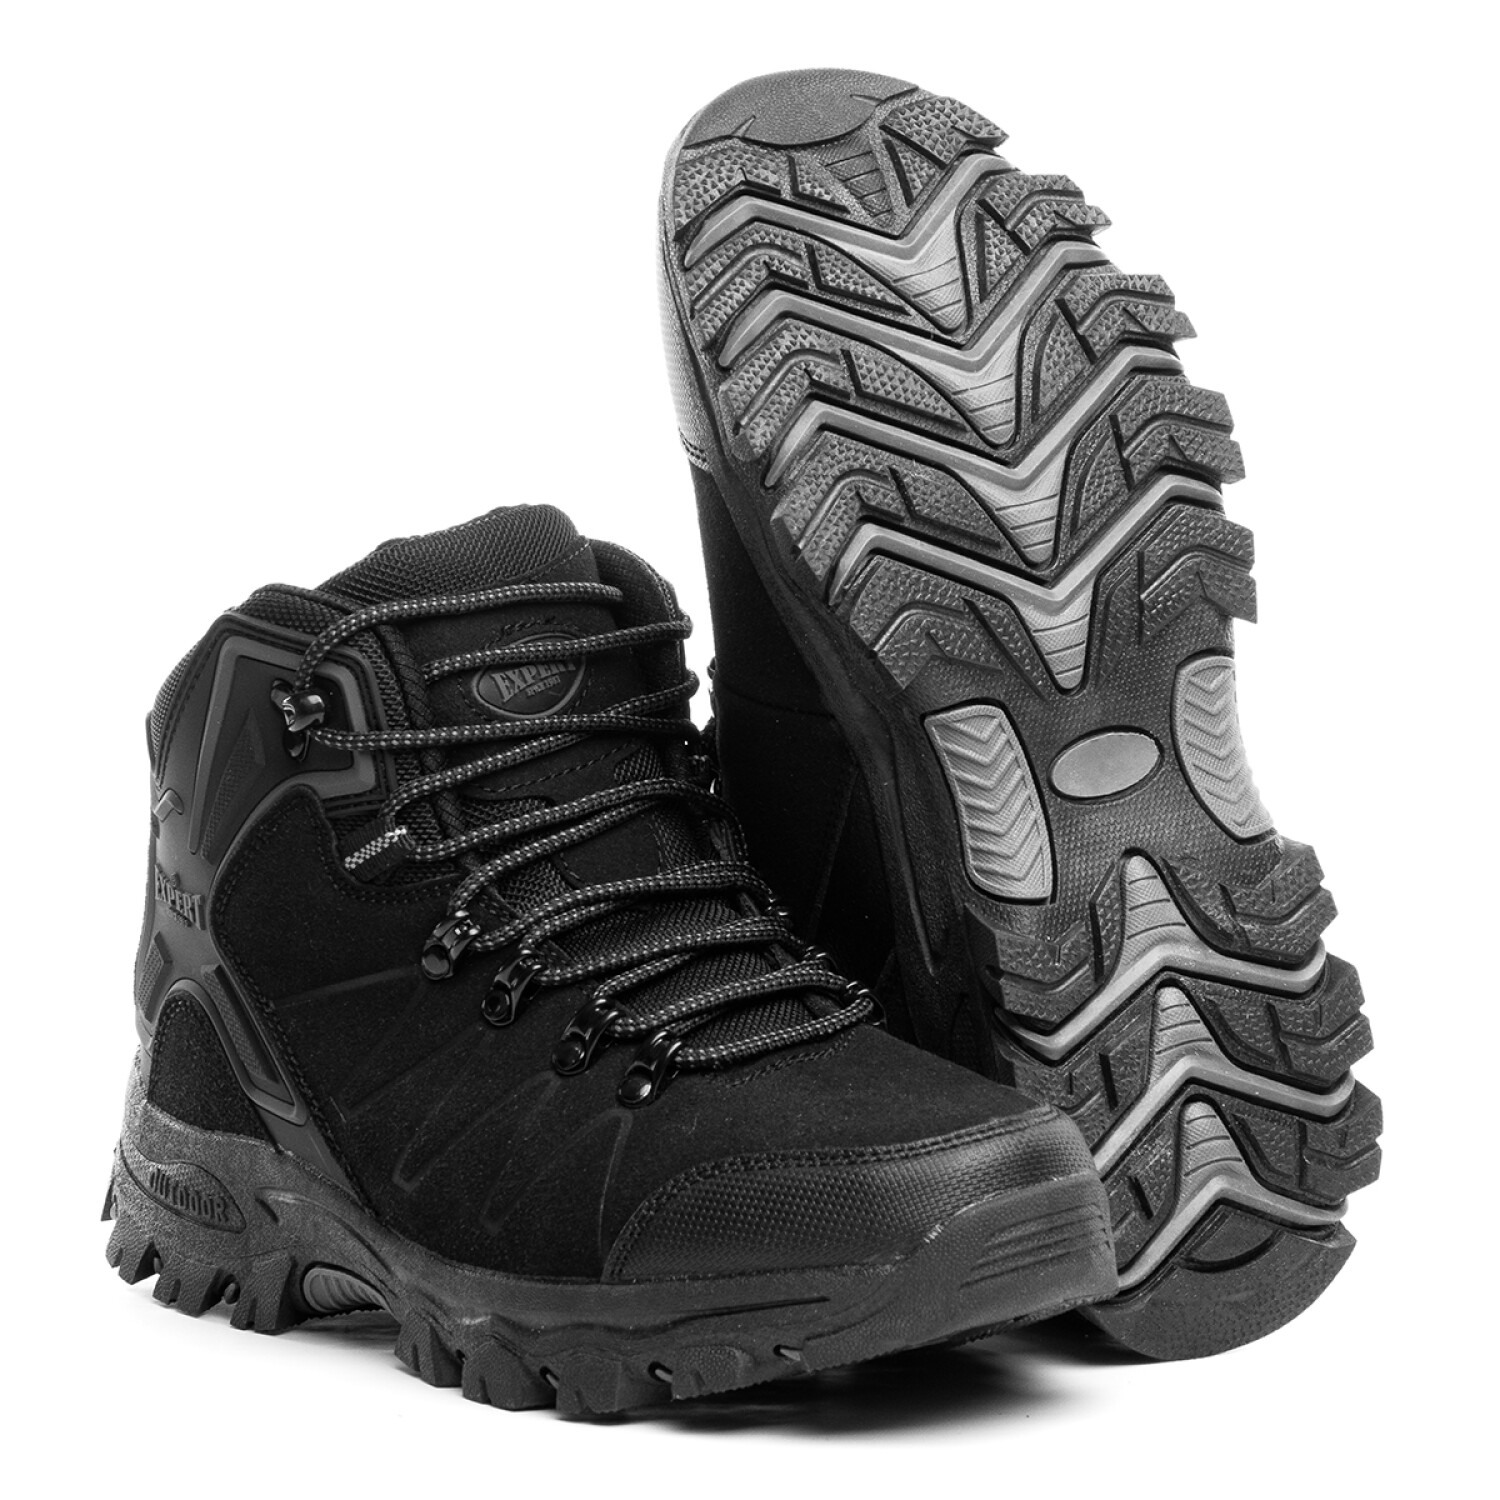  Botas de senderismo impermeables para hombre, zapatos  deportivos para exteriores, 24 negro : Todo lo demás